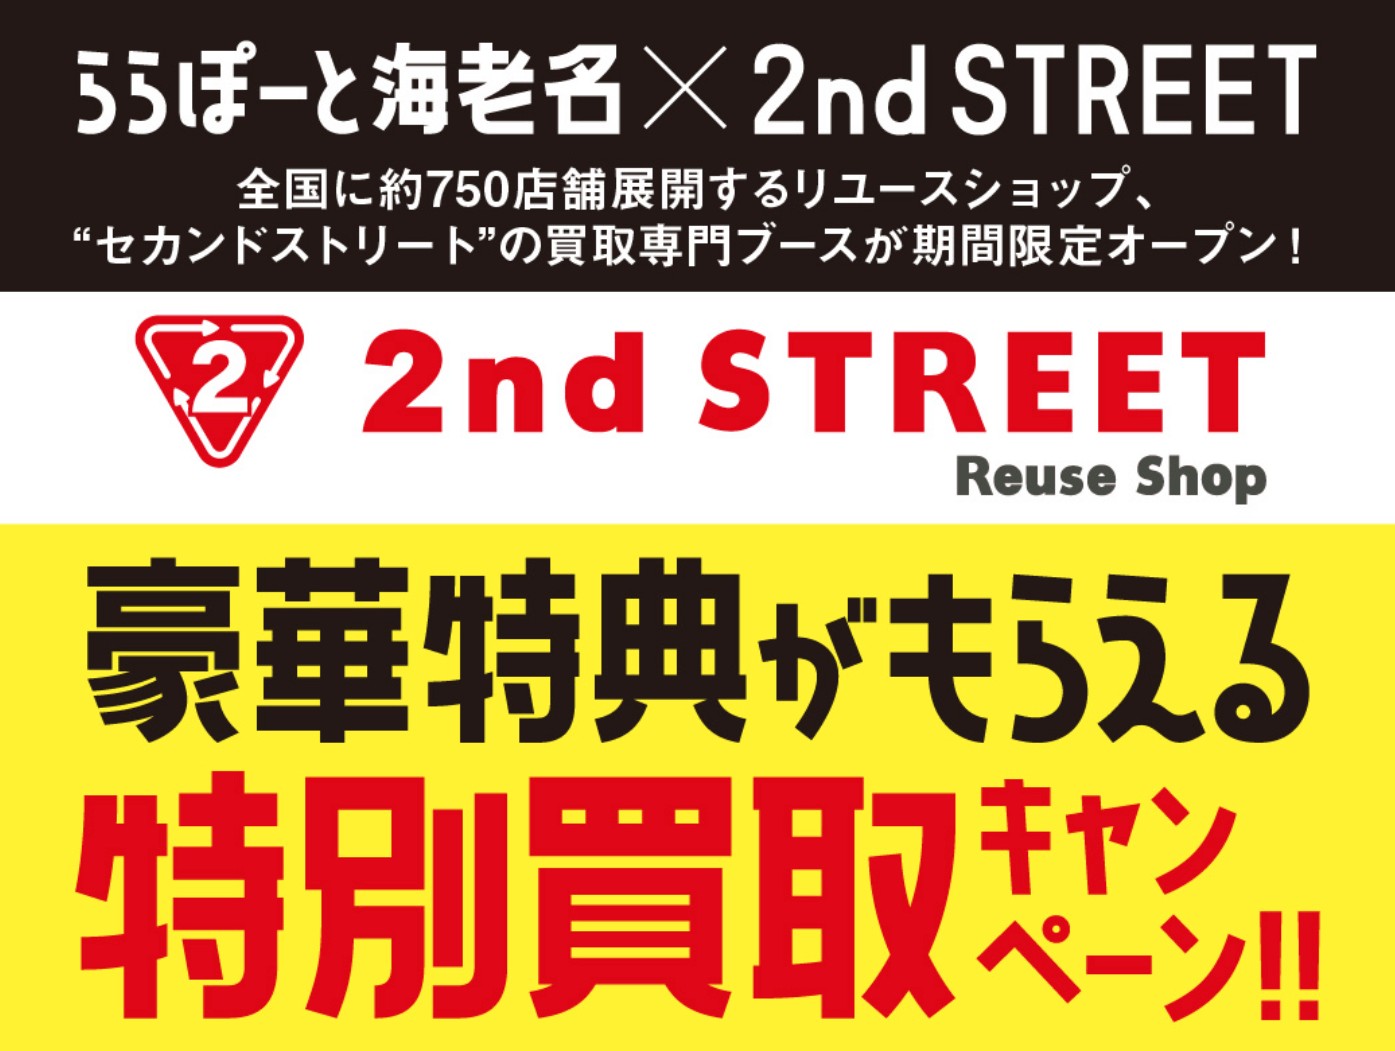 【期間限定】特別買取キャンペーン【ららぽーと海老名×2nd STREET】